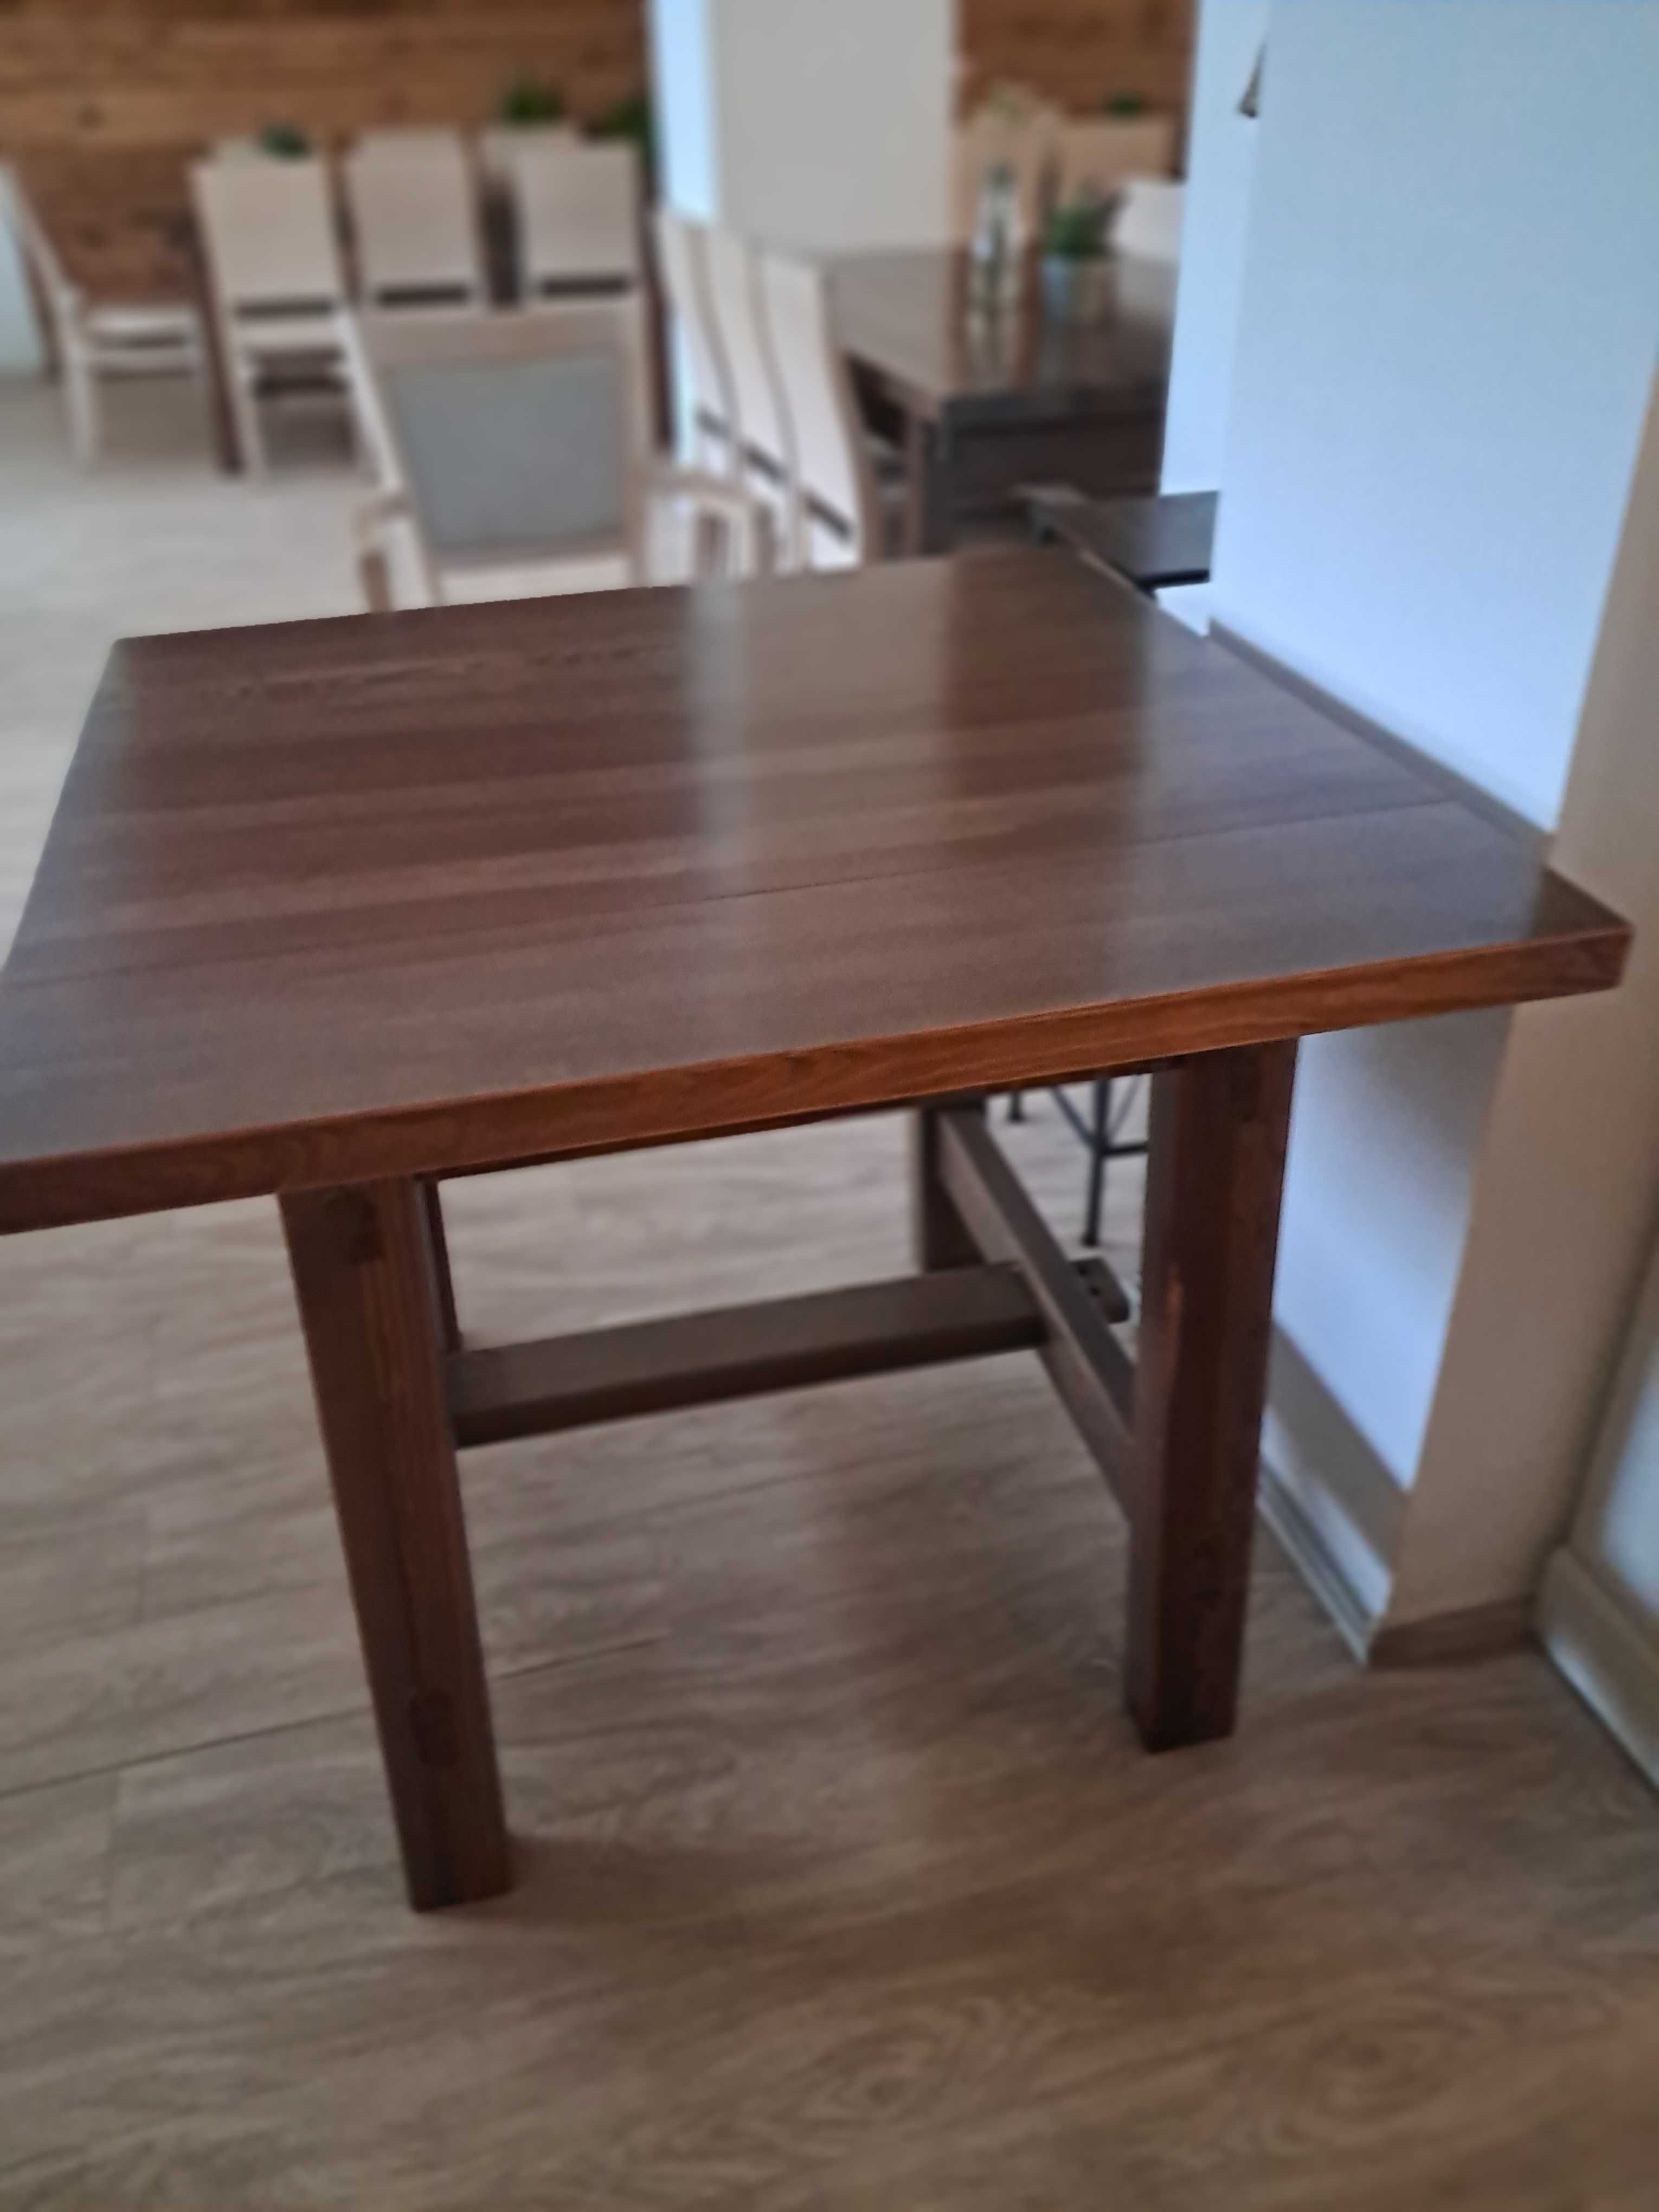 Stół drewniany czteroosobowy lub sześcioosobowy